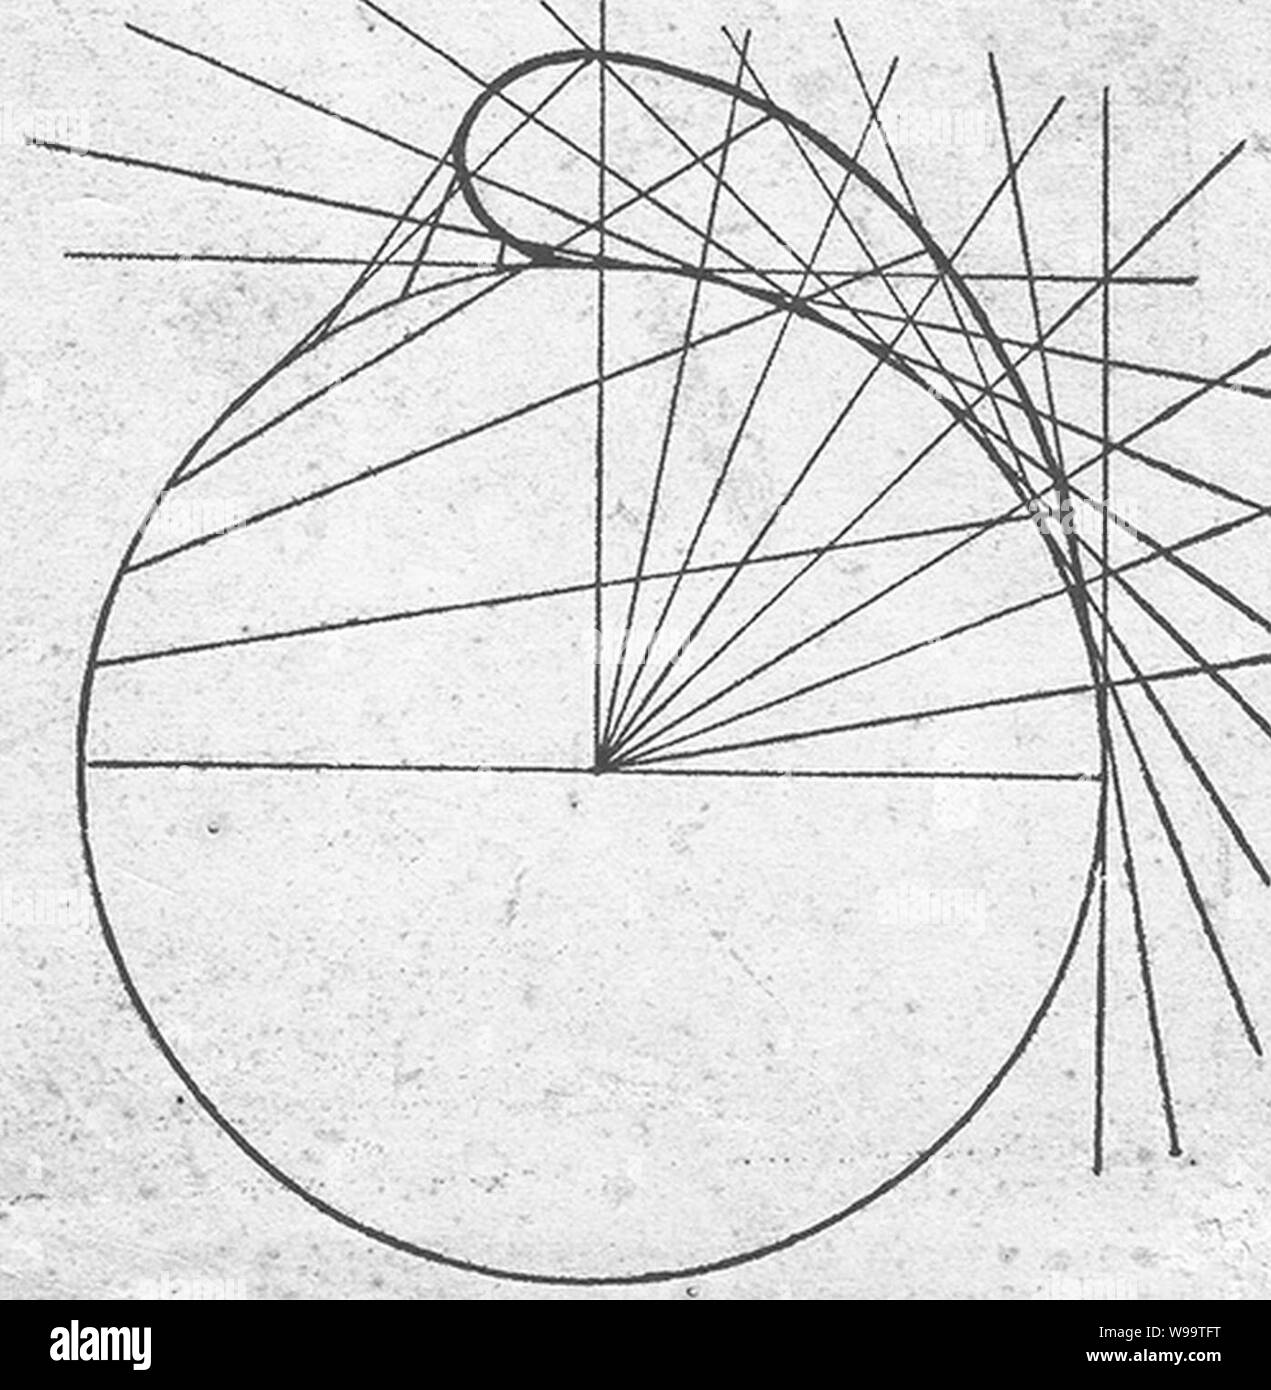 Dibujo simplificado de La Curva matemática Cornoide. Stockfoto